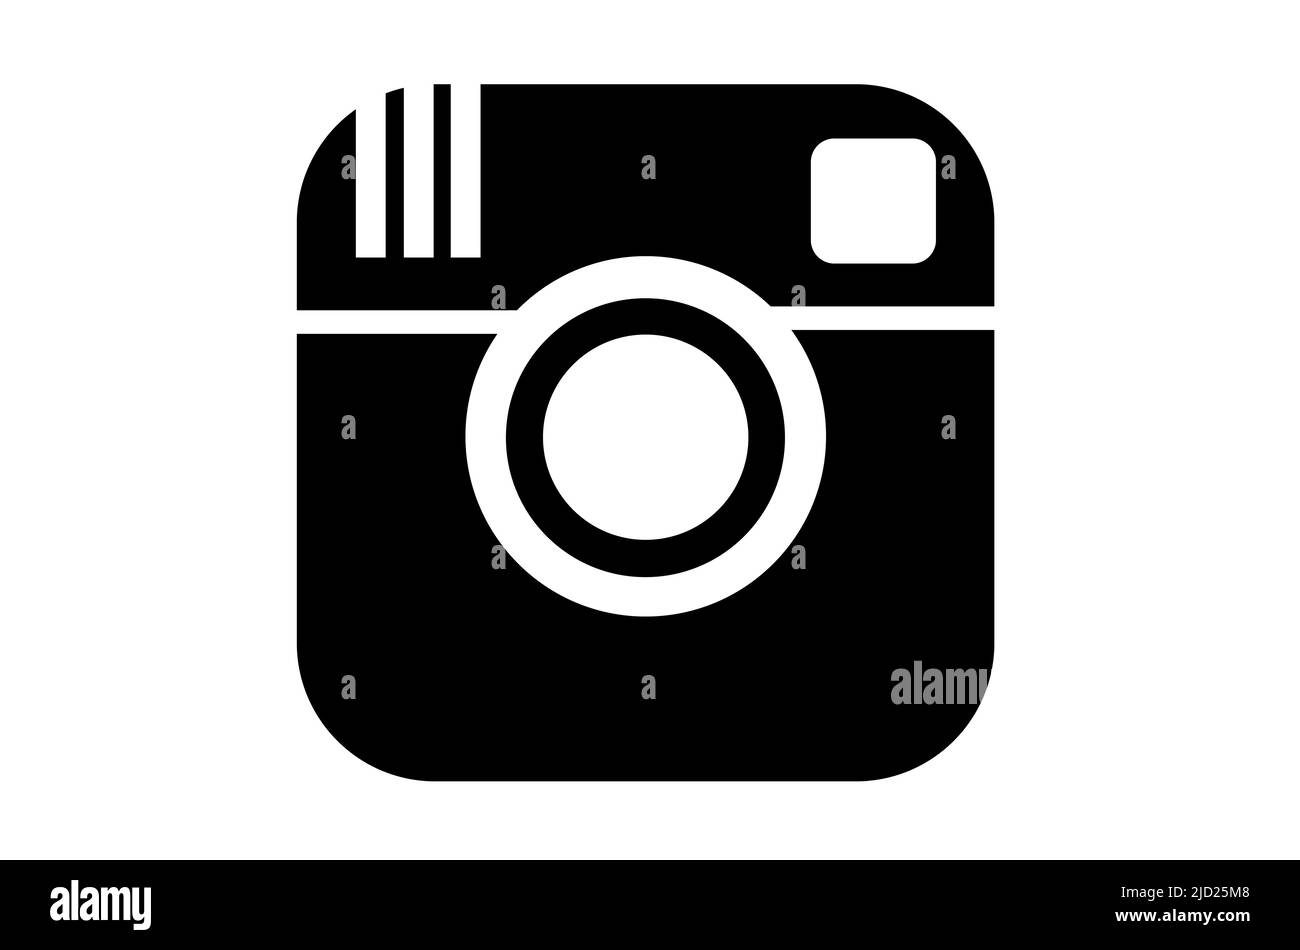 Instagram. Instagram Social Network Logo Design in schwarz auf weißem Hintergrund. Soziales Netzwerk. Illustratives Design. Abbildung. Stockfoto